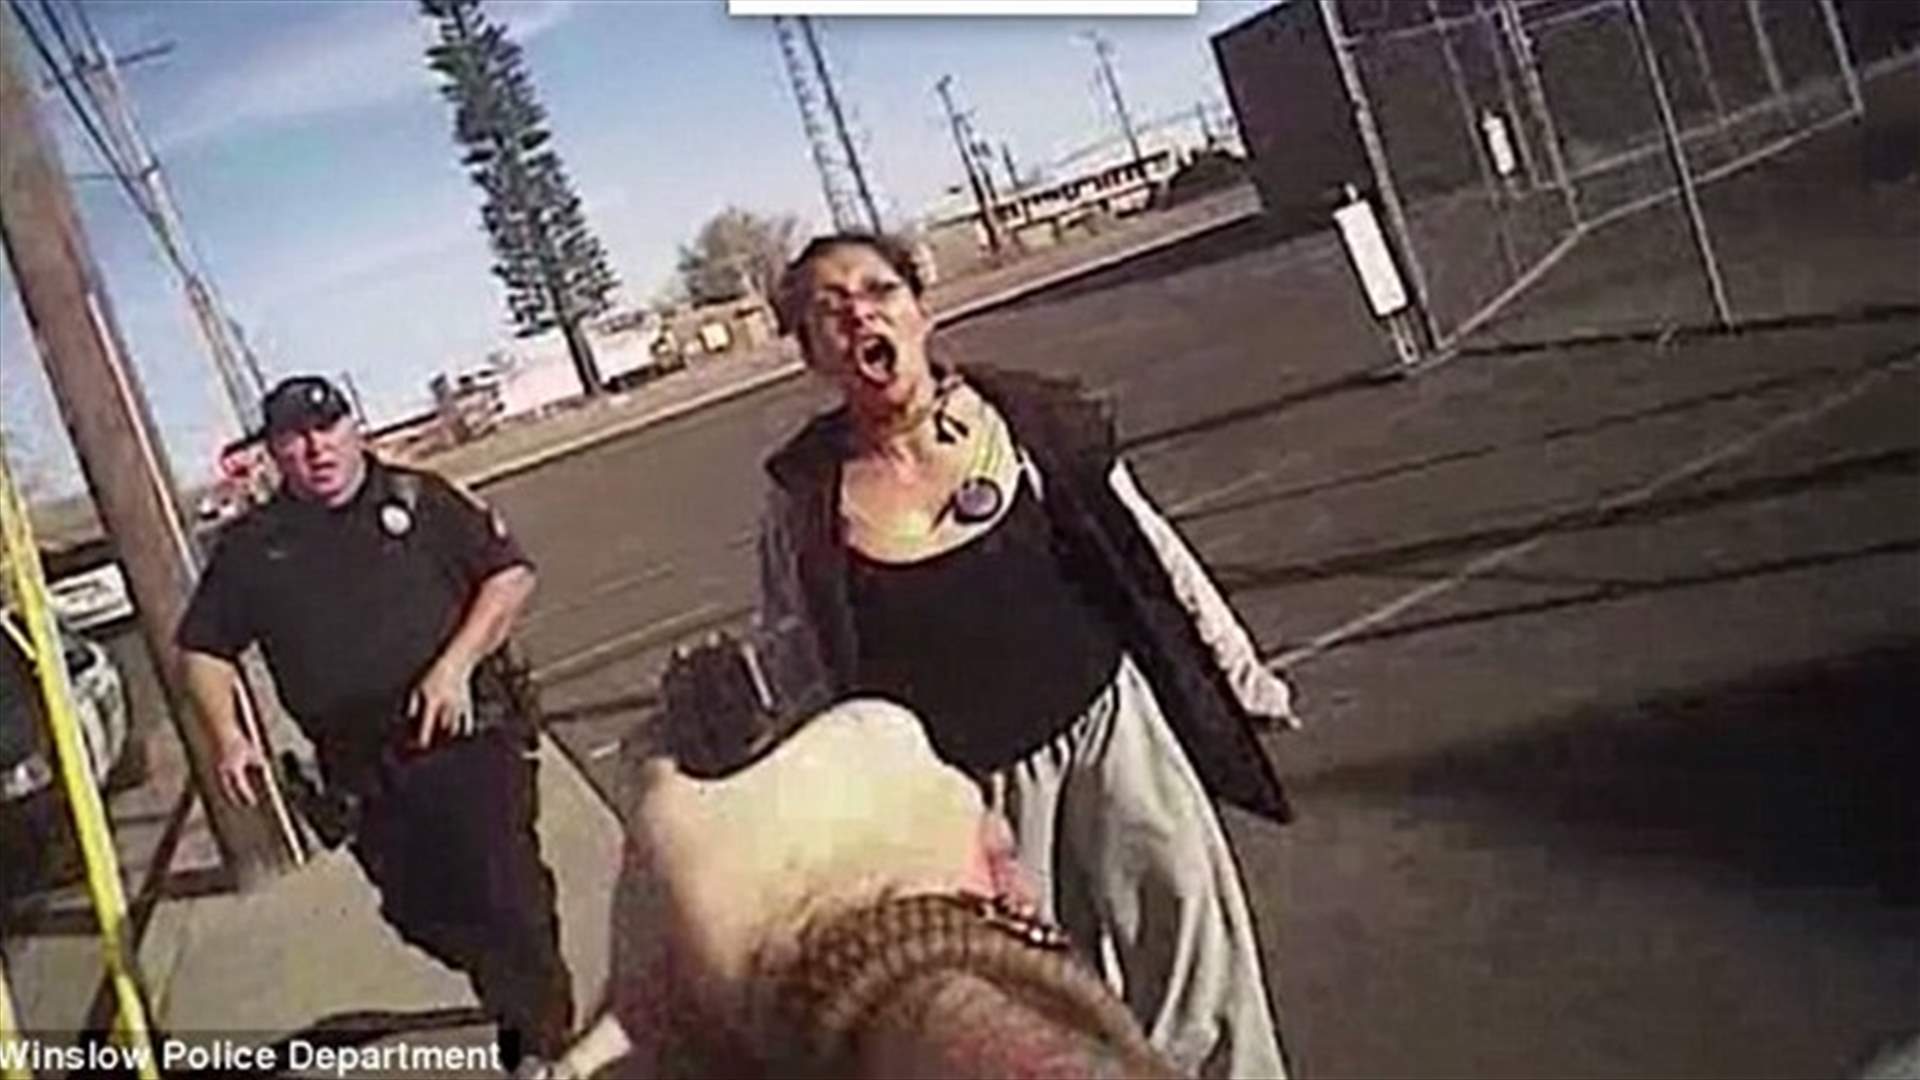 بالفيديو: قاومت شرطياً حاول اعتقالها... فقُتلت! 